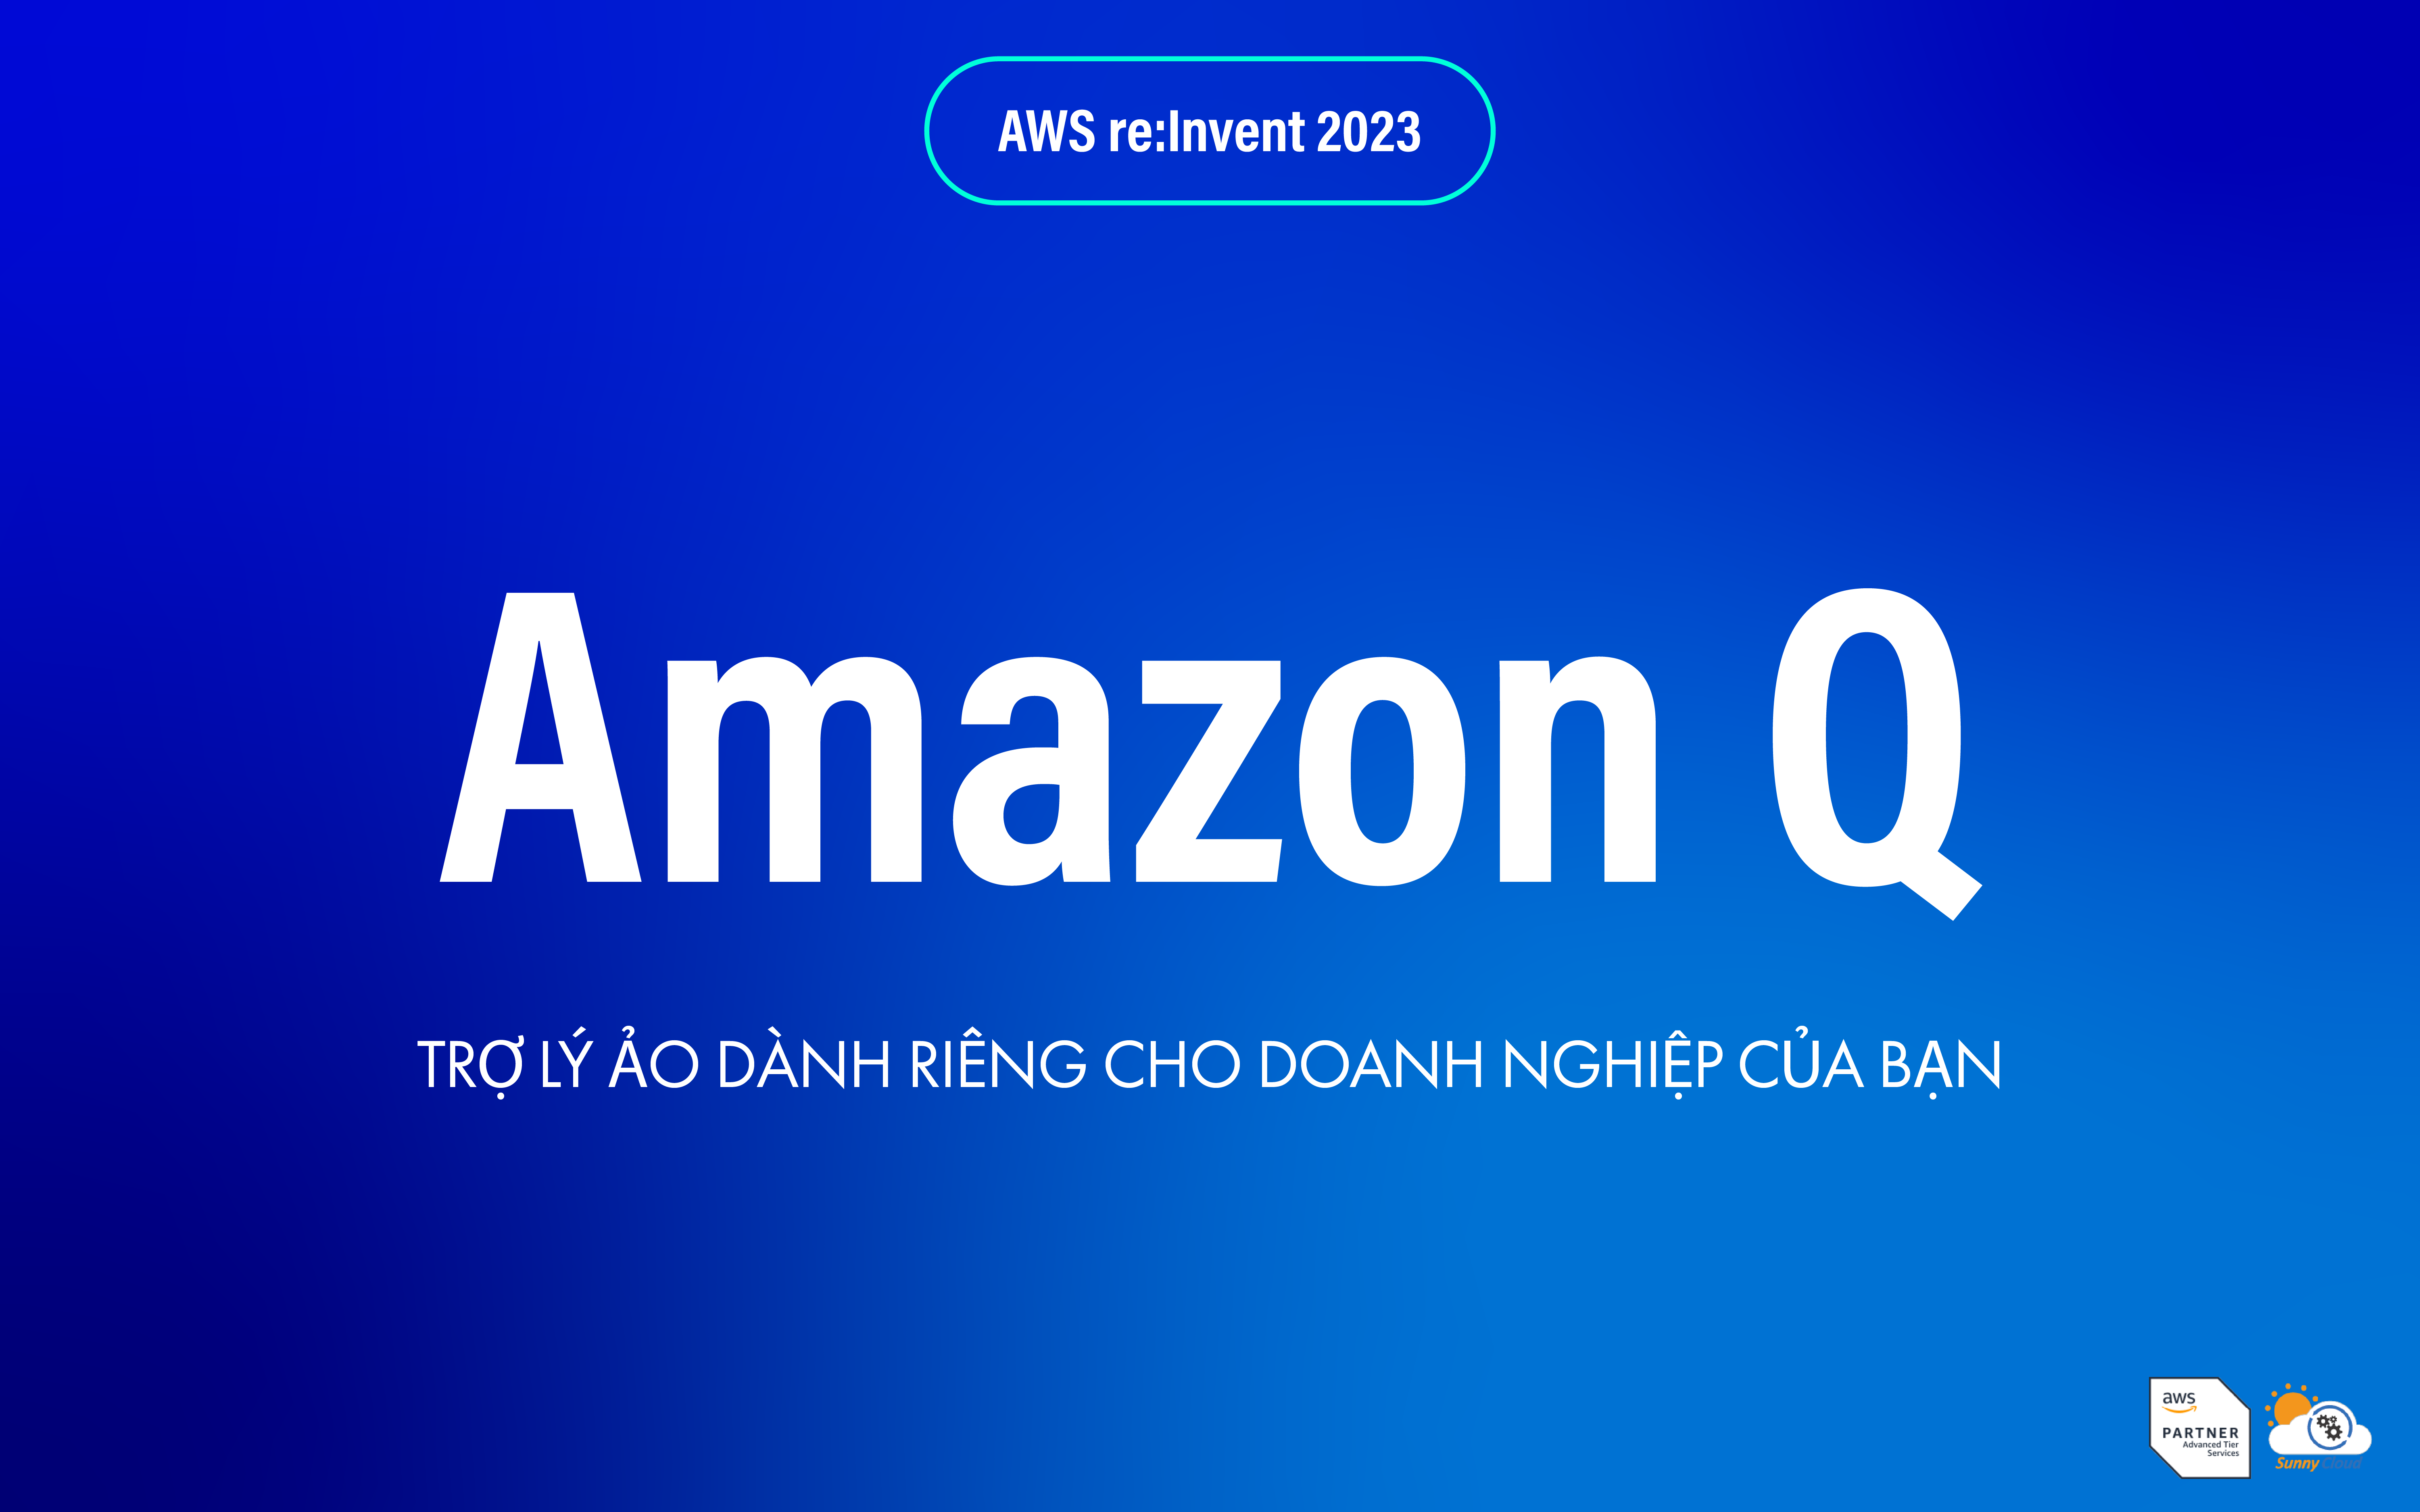 Trợ lý ảo Amazon Q dành riêng cho doanh nghiệp của bạn